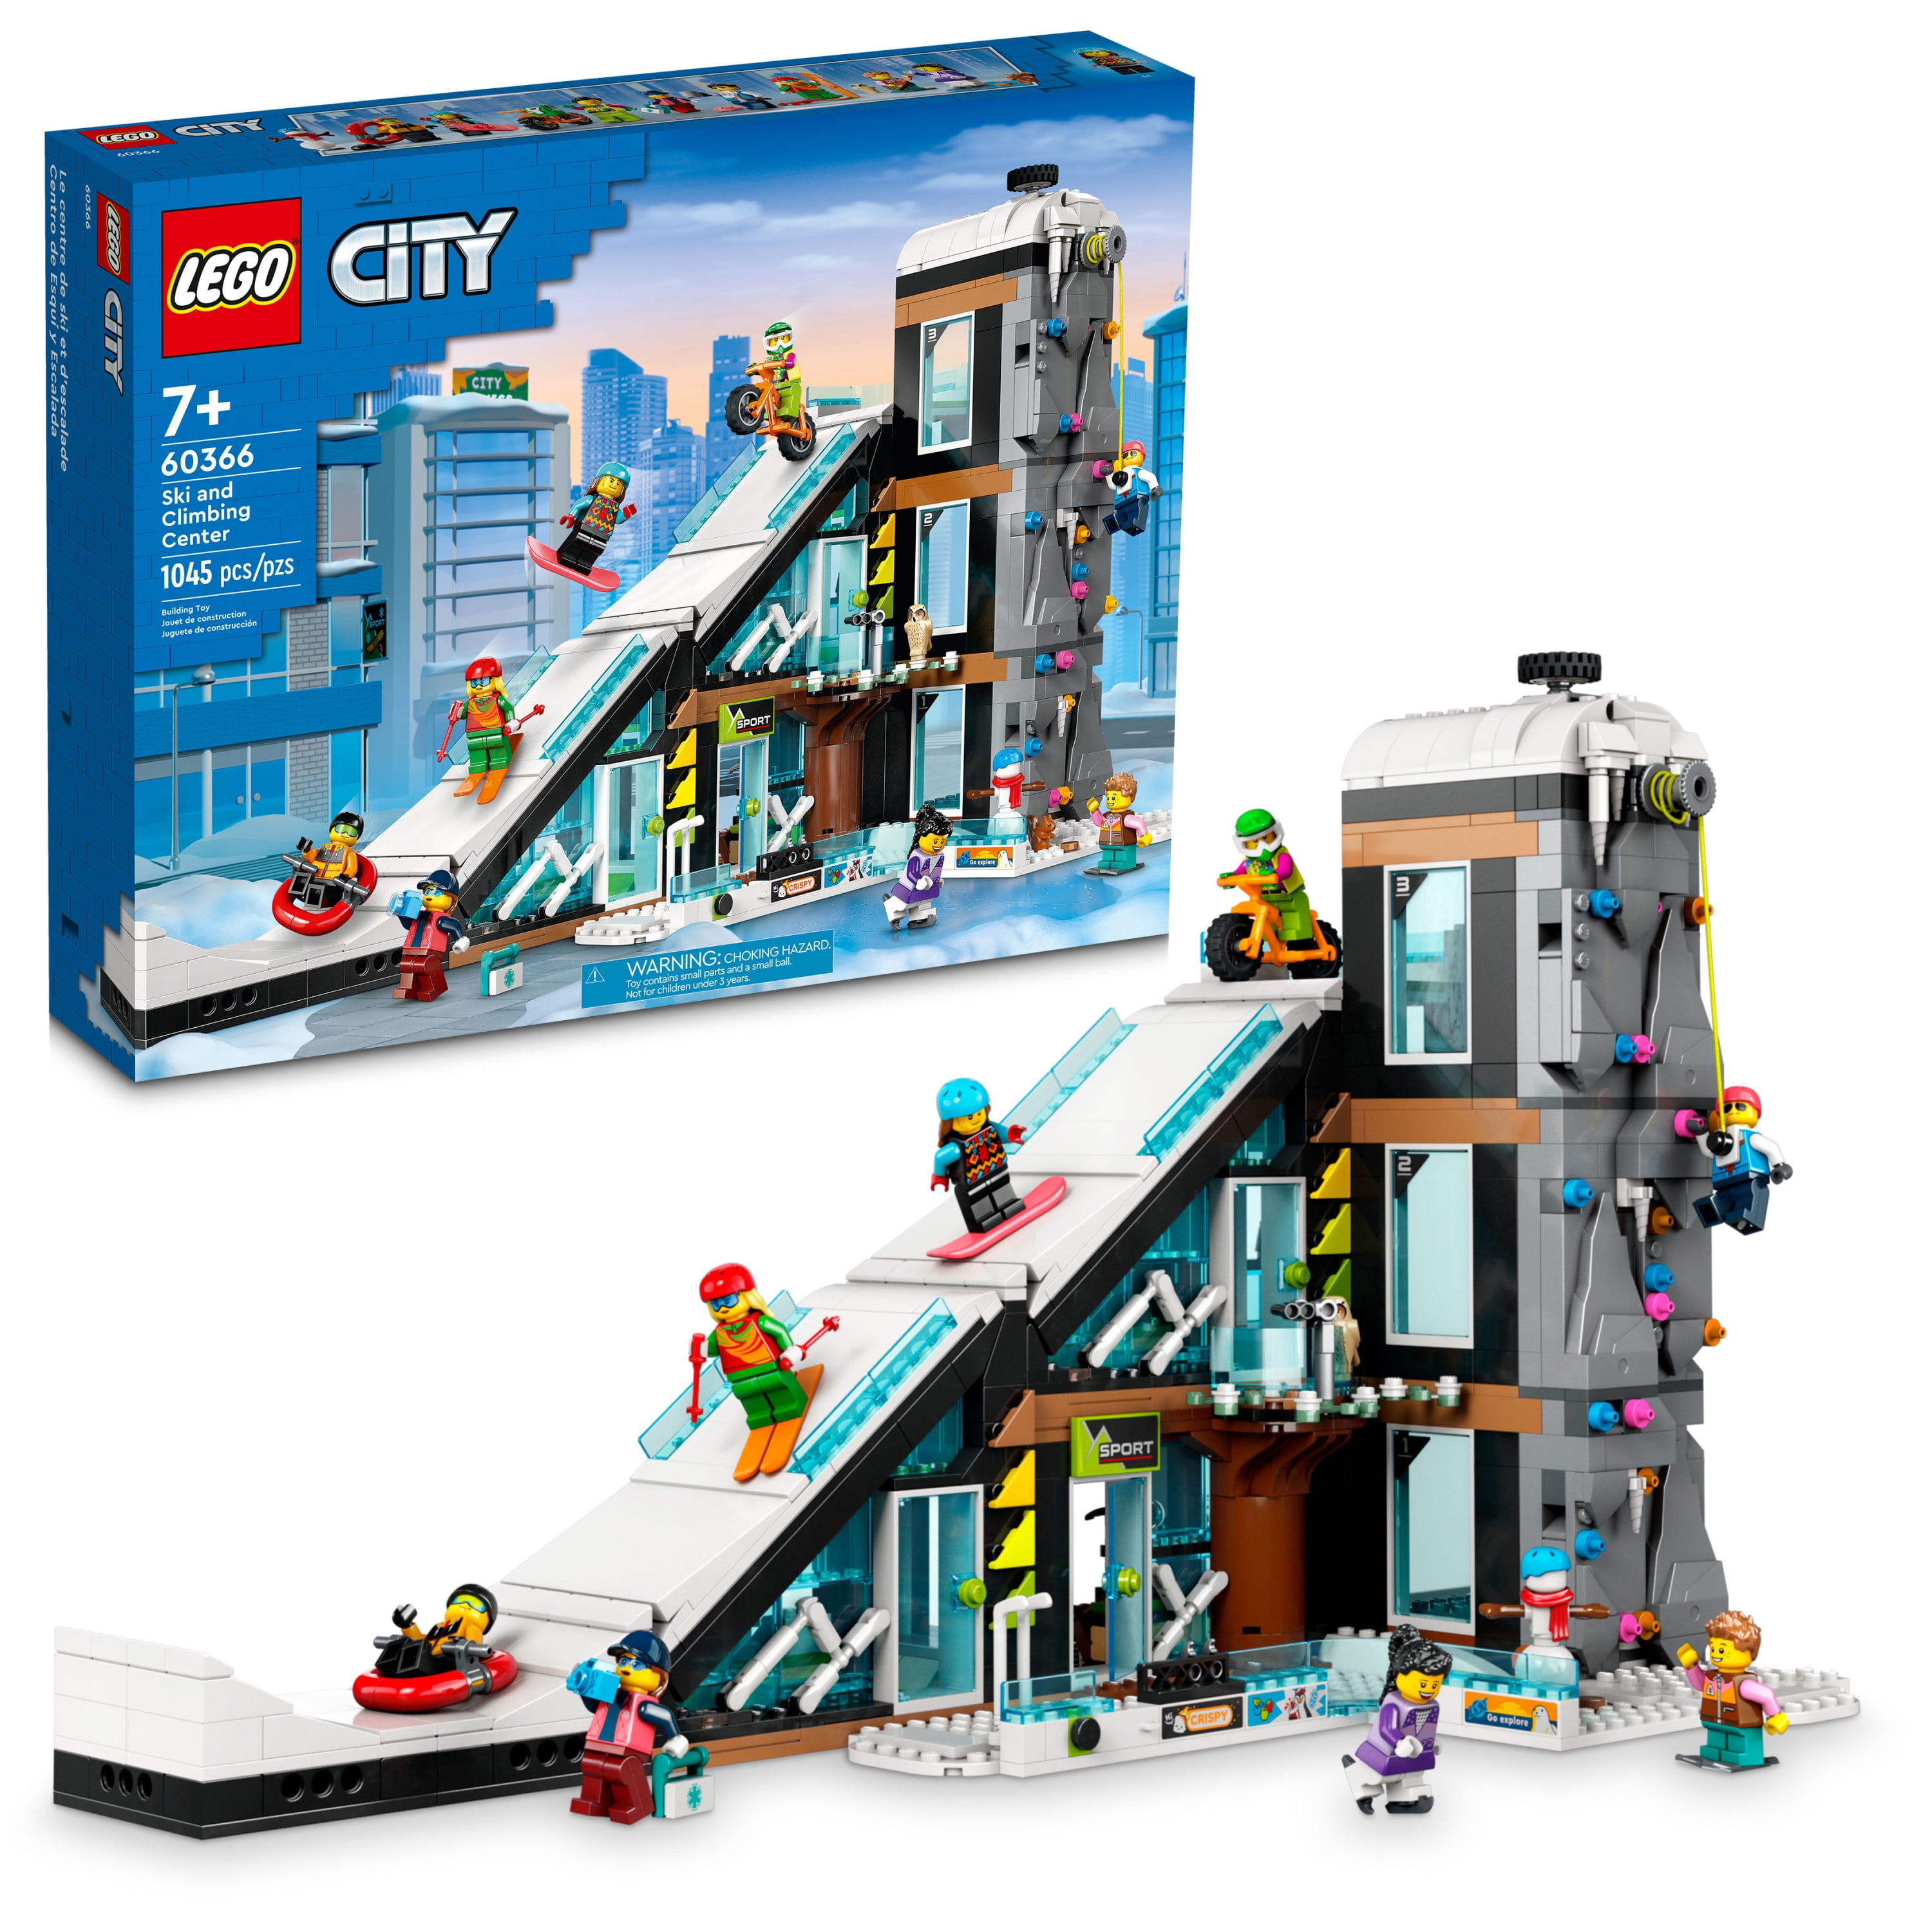 Lego City Ski and Climbing Center Set 60366